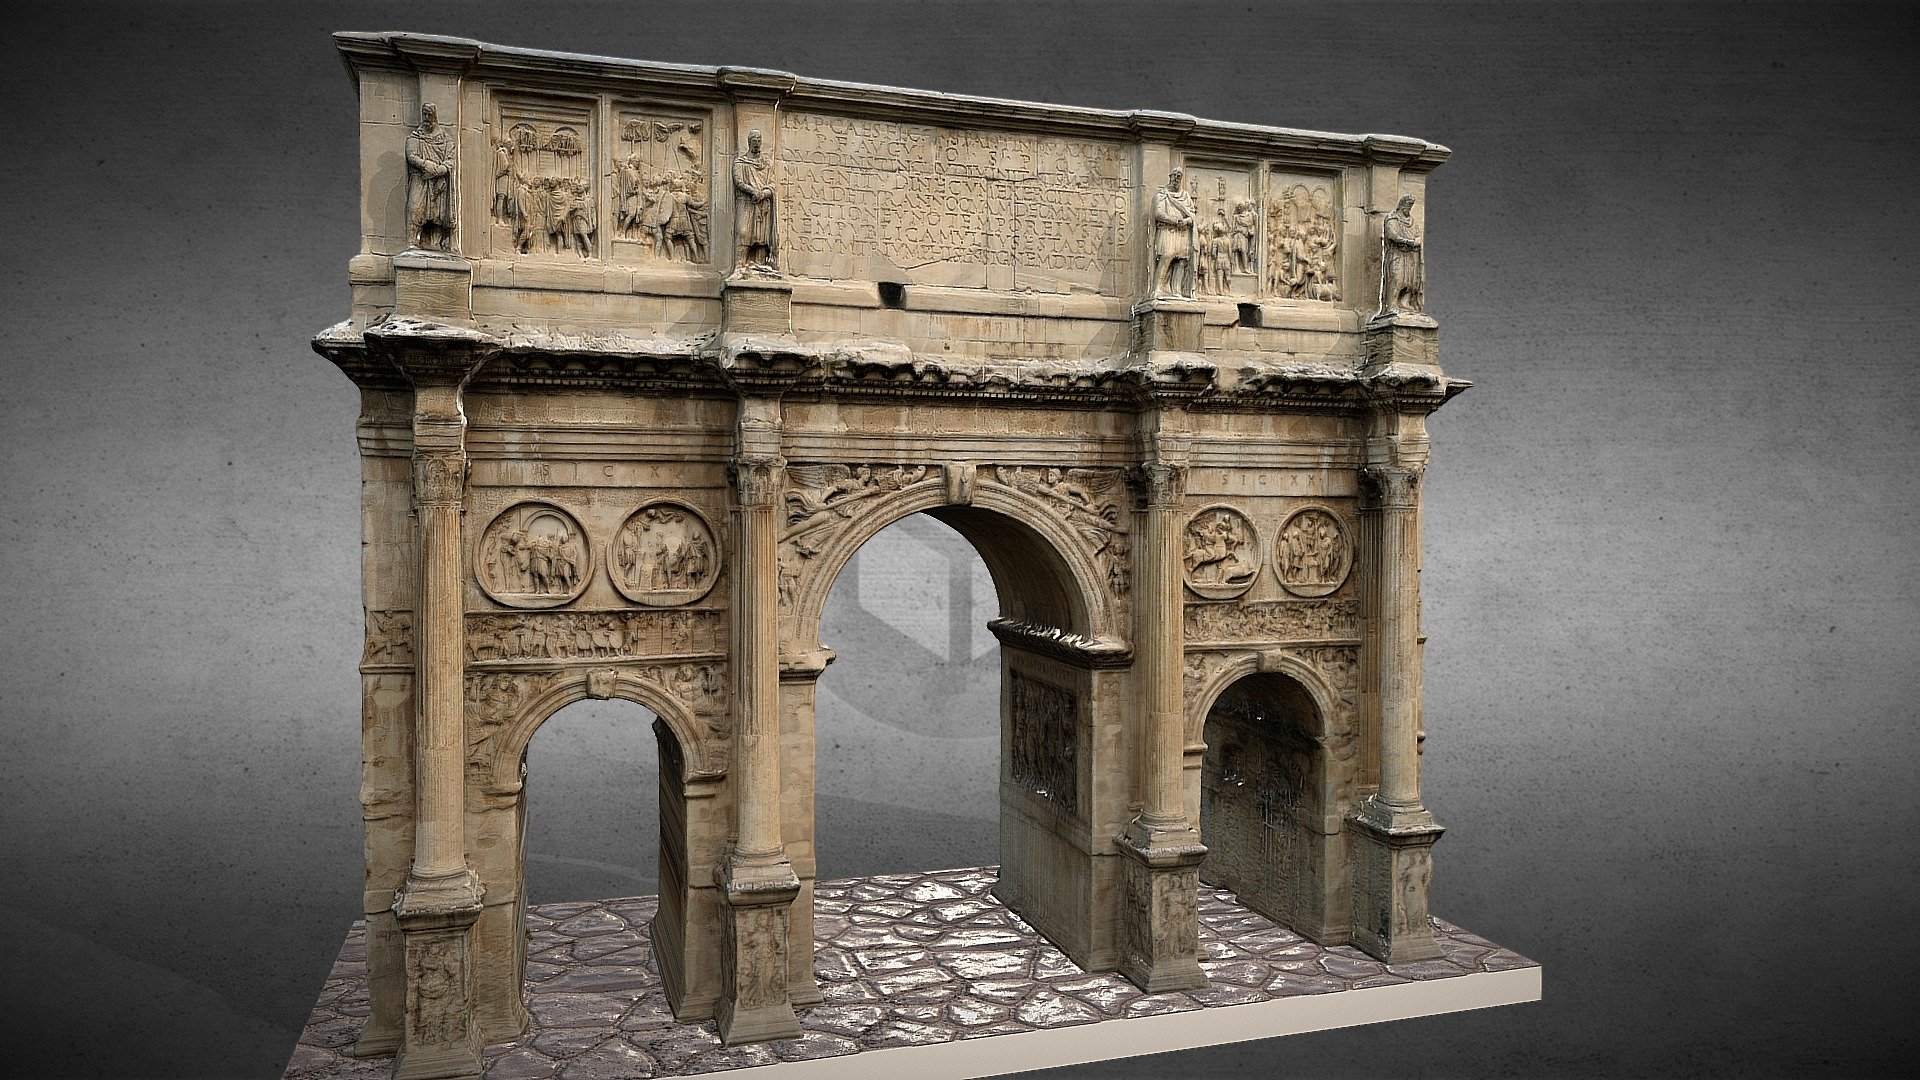 Reproducción del arco de Constantino, situado junto al Coliseo de Roma. La tipología decorativa del mismo refleja una de las prácticas más comunes del momento (y durante los siglos venideros): la &ldquo;spolia